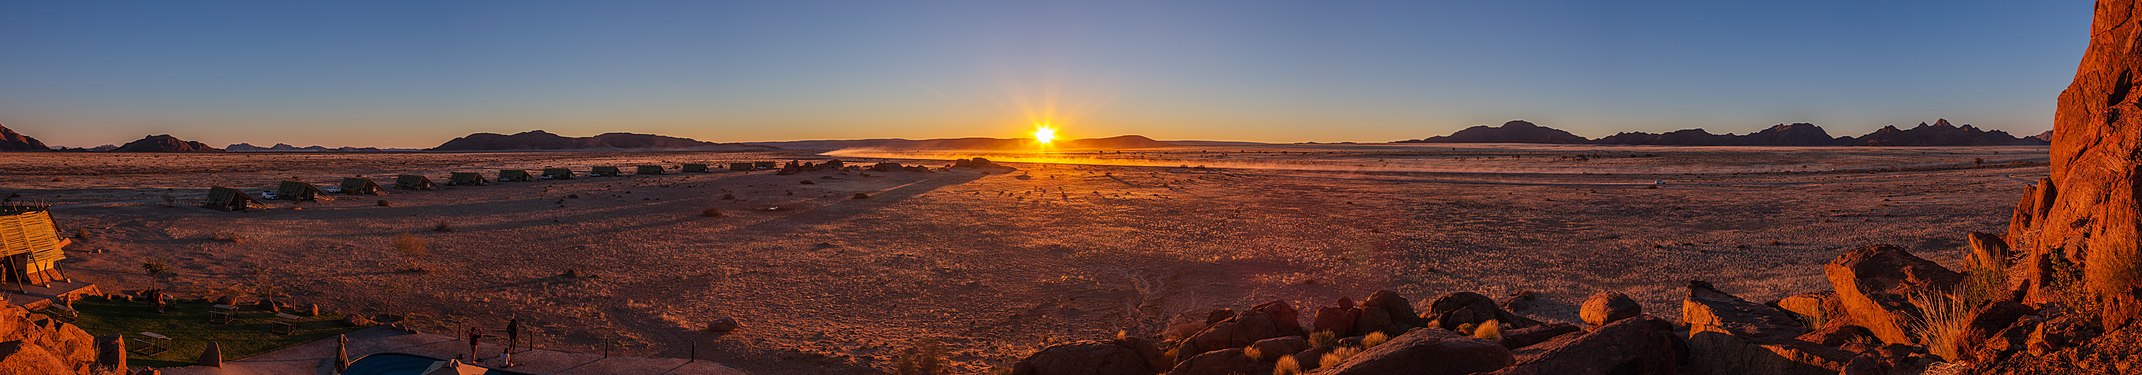 Sunrise, Namib Desert, Namibia.